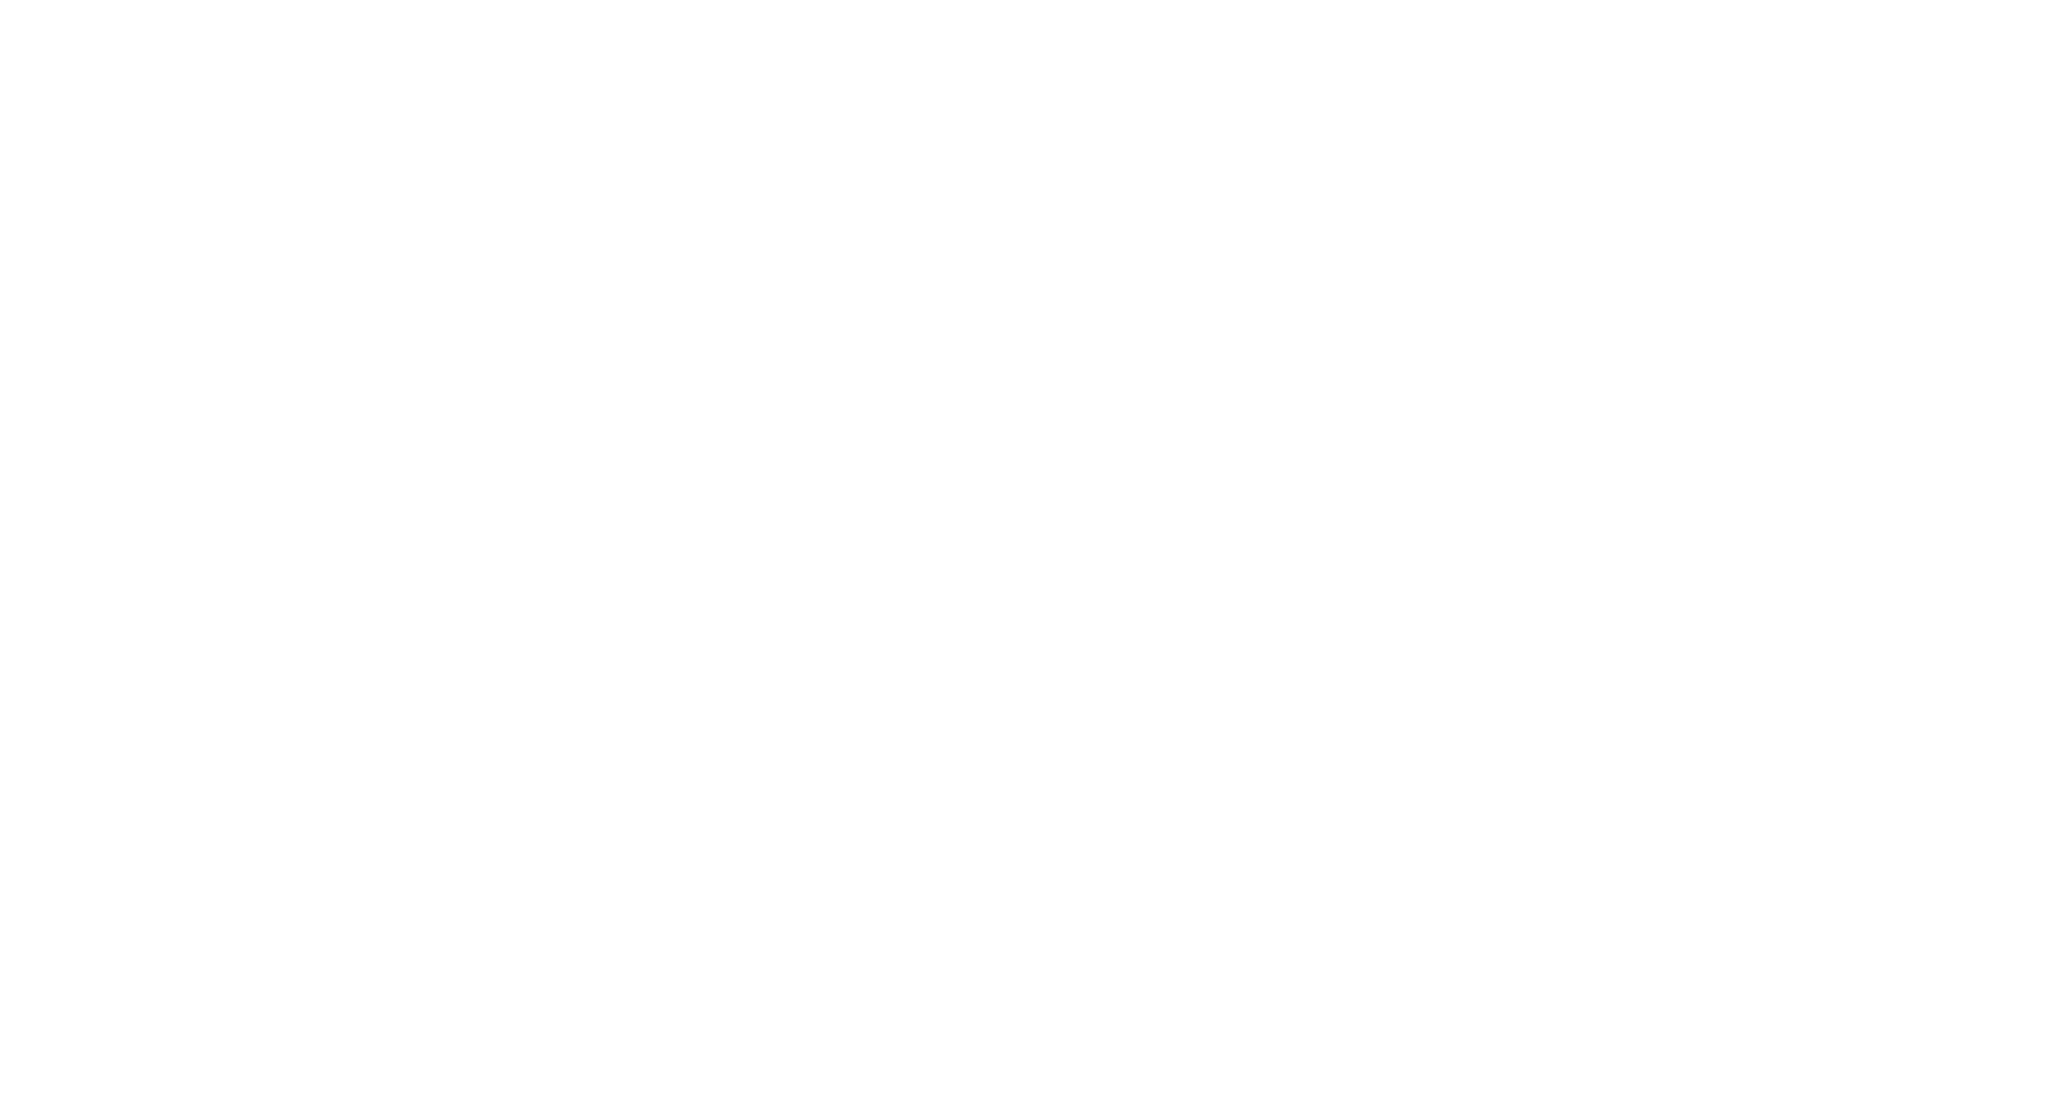 Detour 2 roues